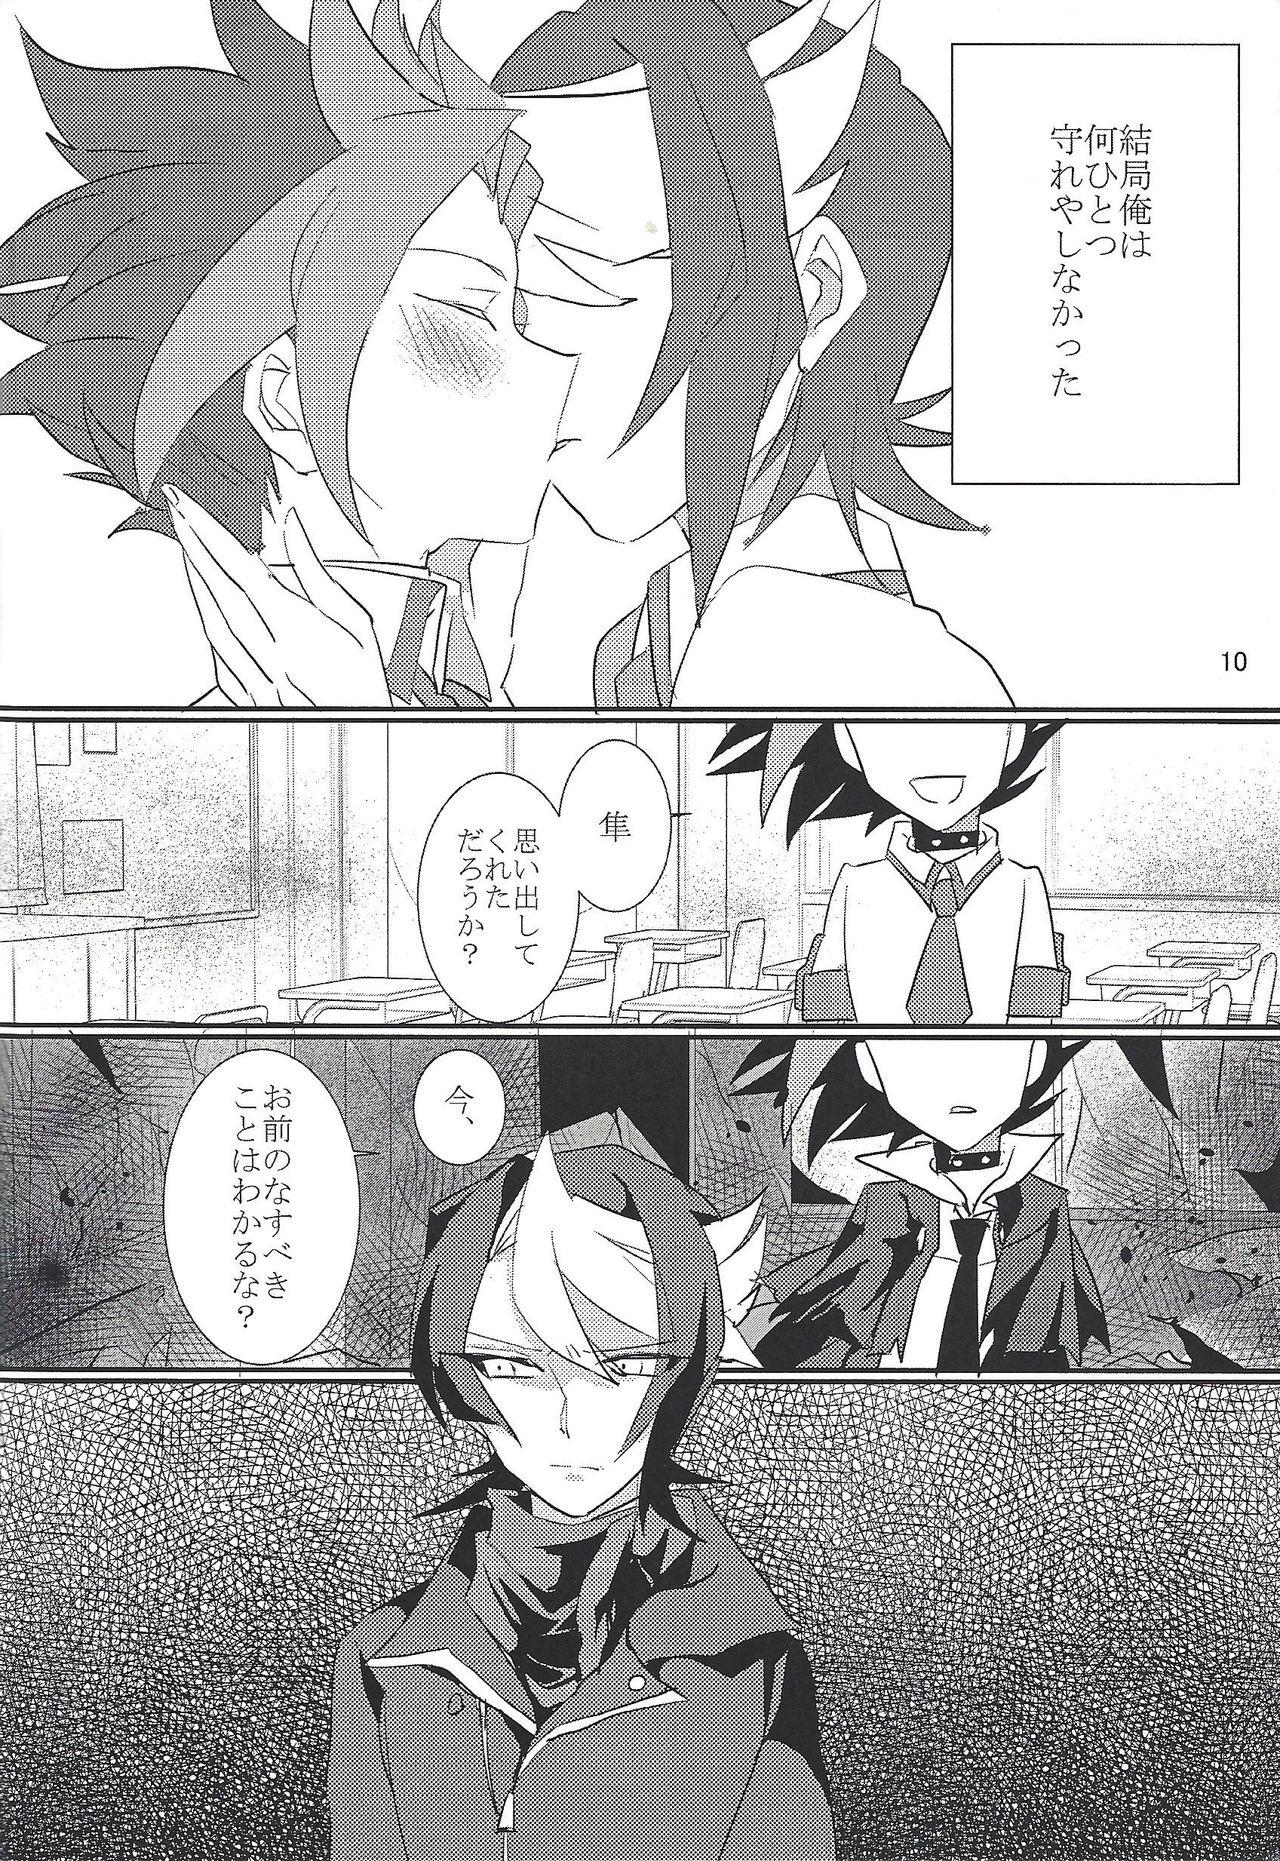 Inked Horobi no gakusha - Yu-gi-oh arc-v 3some - Page 11